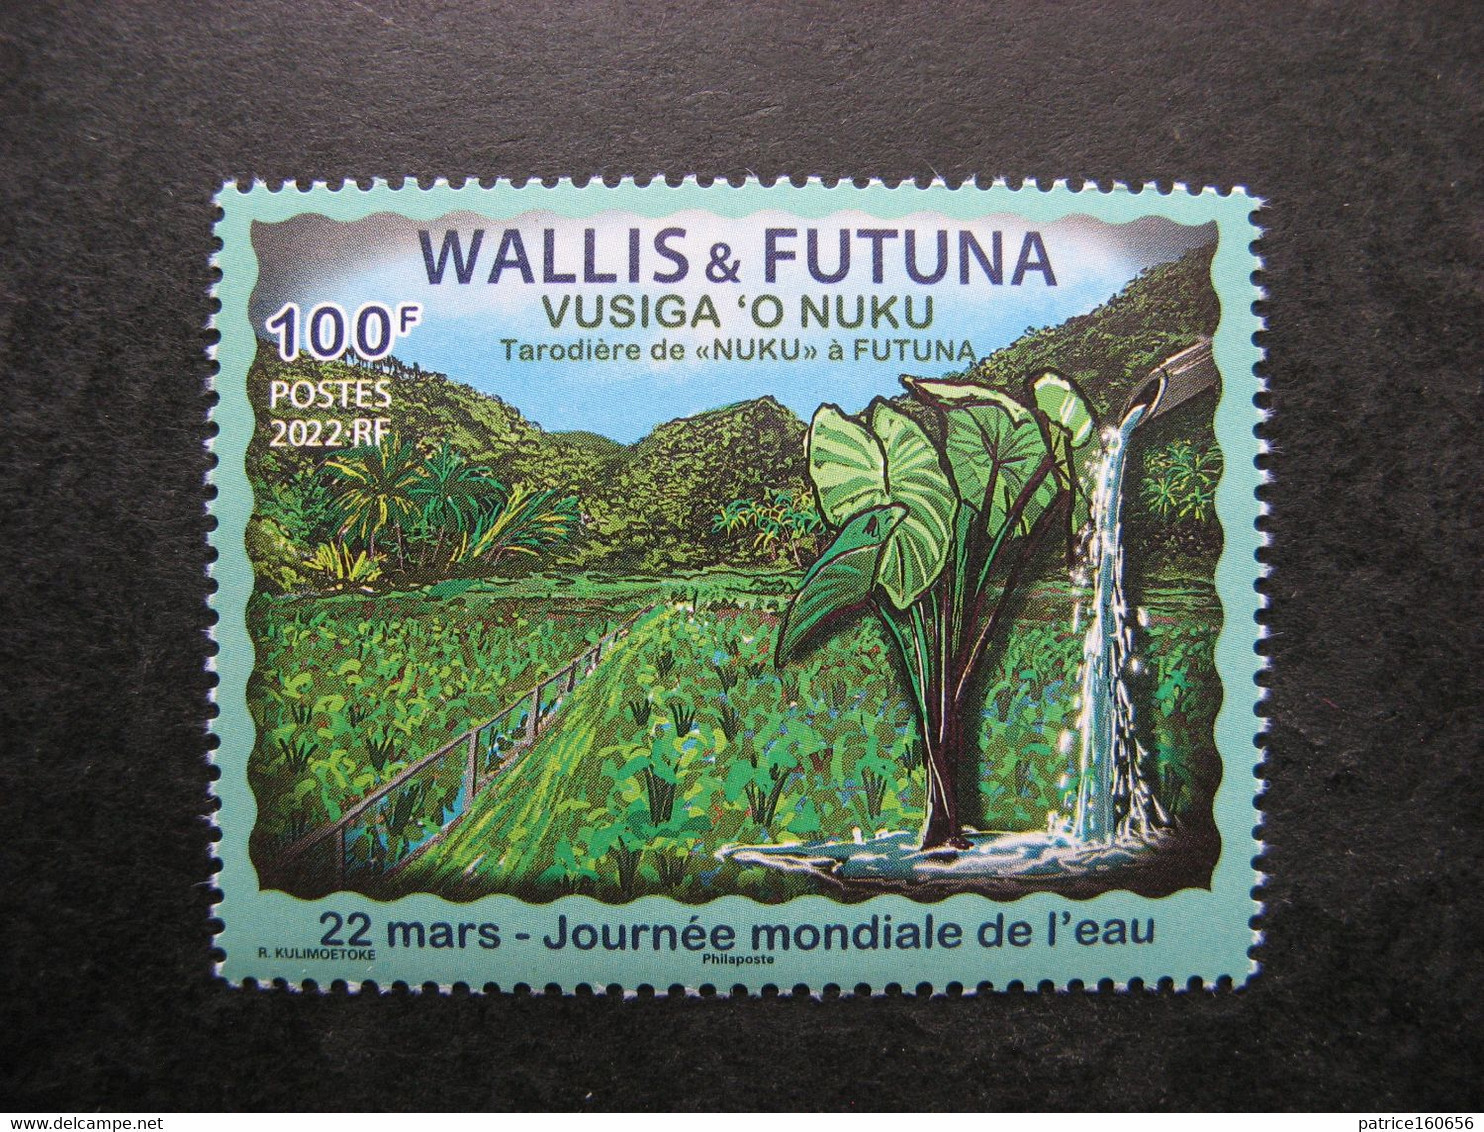 Wallis Et Futuna: TB N° 954,  Neuf XX . - Ongebruikt